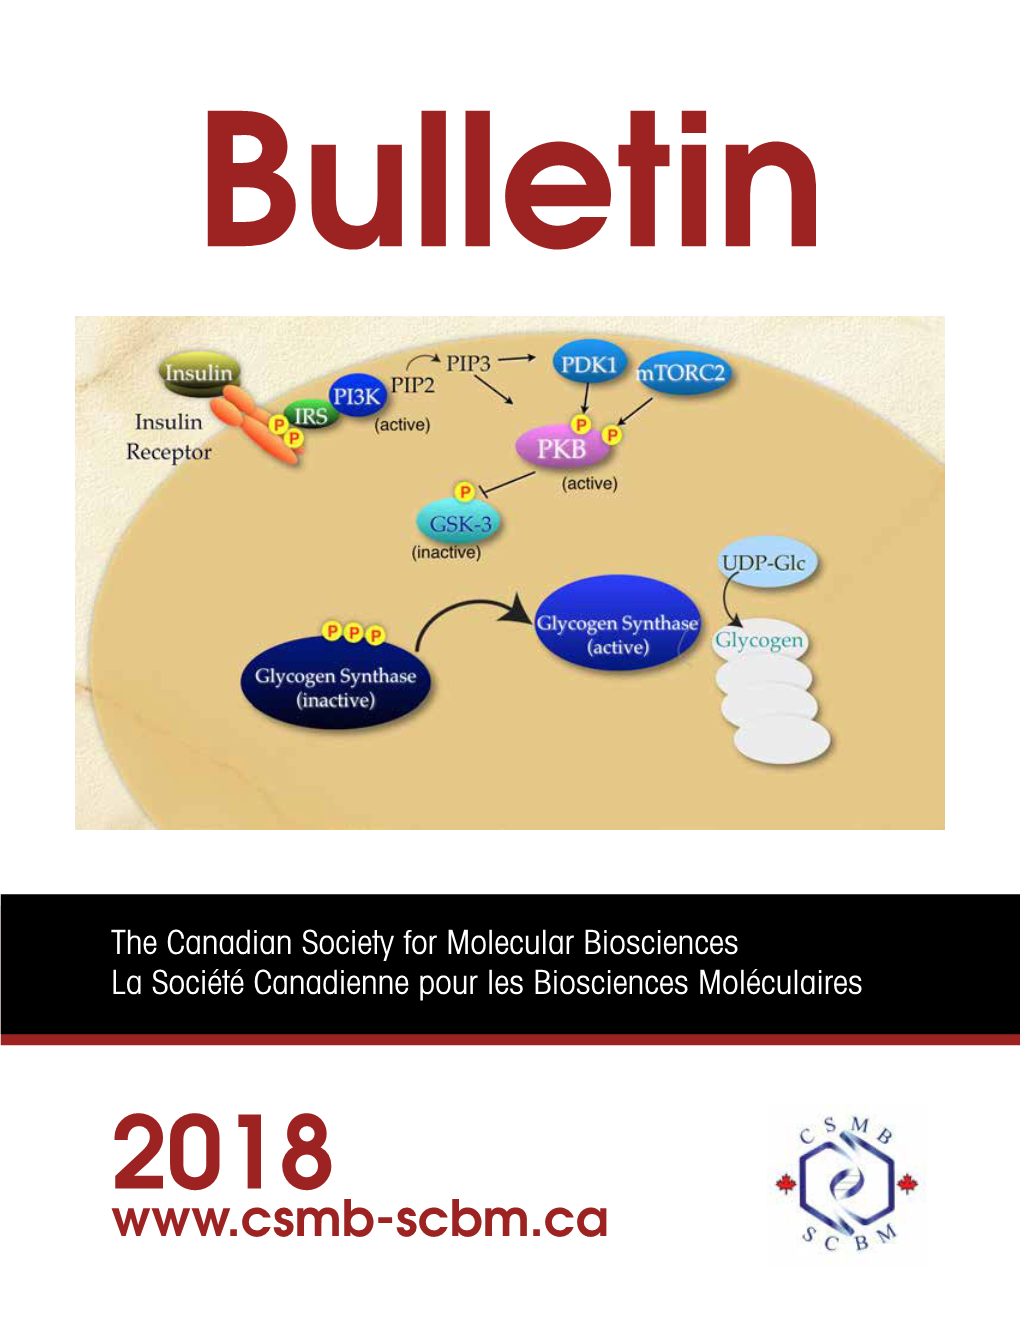 Bulletin the Canadian Society for Molecular Biosciences La Société Canadienne Pour Les Biosciences Moléculaires